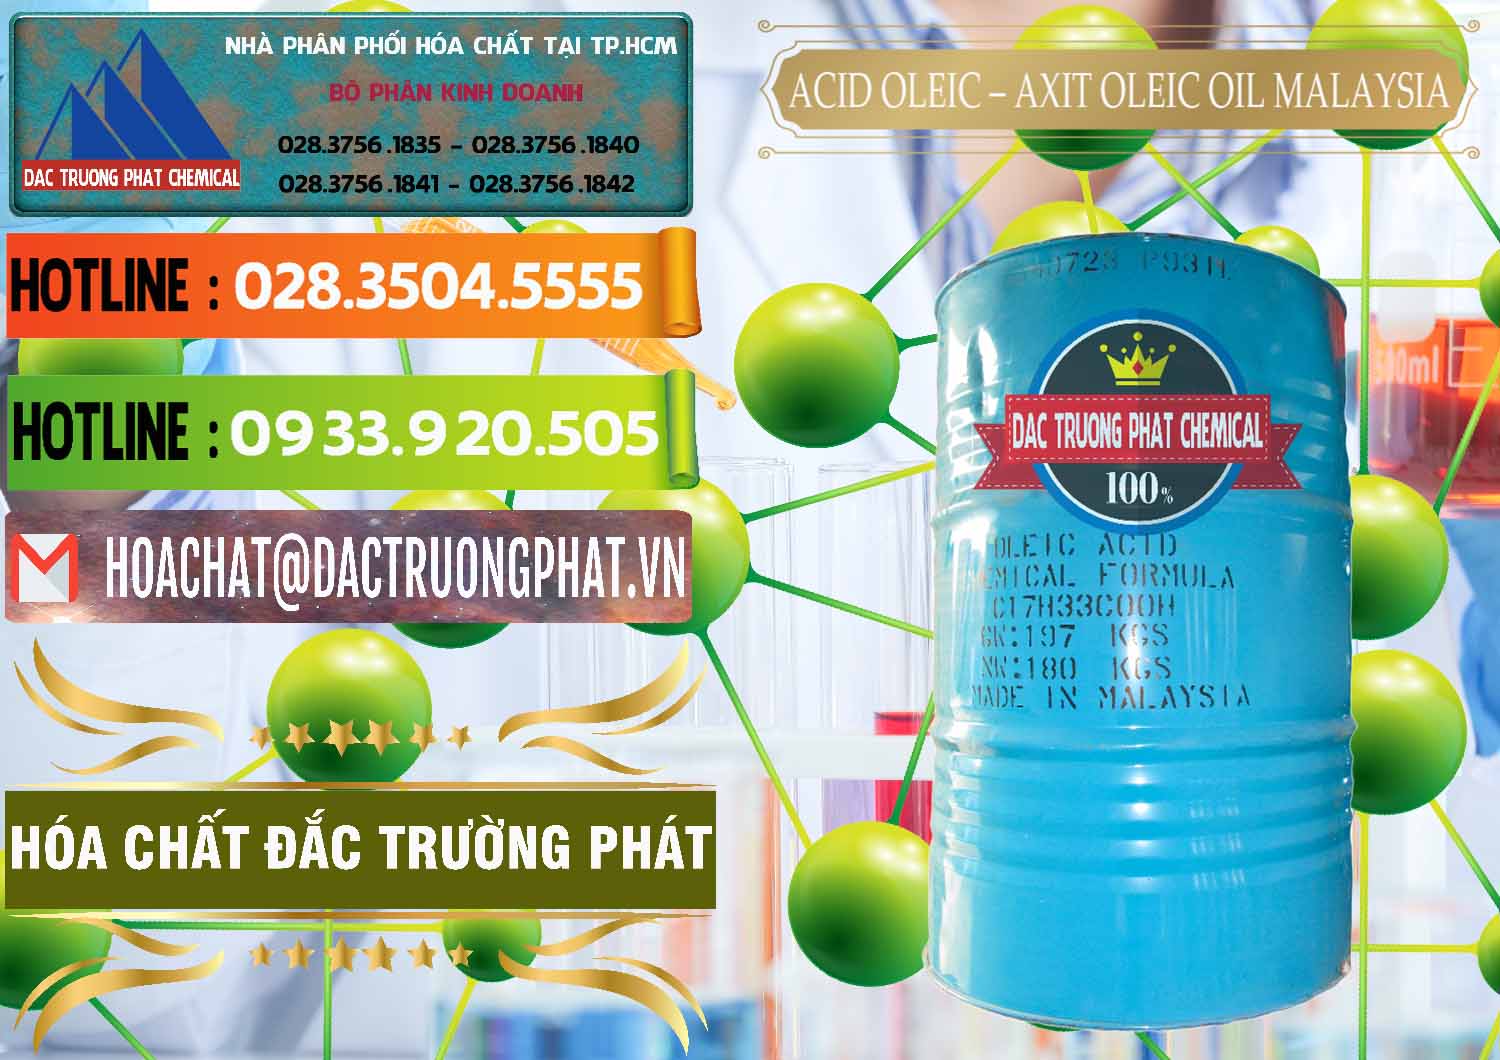 Cty chuyên phân phối _ bán Acid Oleic – Axit Oleic Oil Malaysia - 0013 - Nhà cung cấp và bán hóa chất tại TP.HCM - cungcaphoachat.com.vn